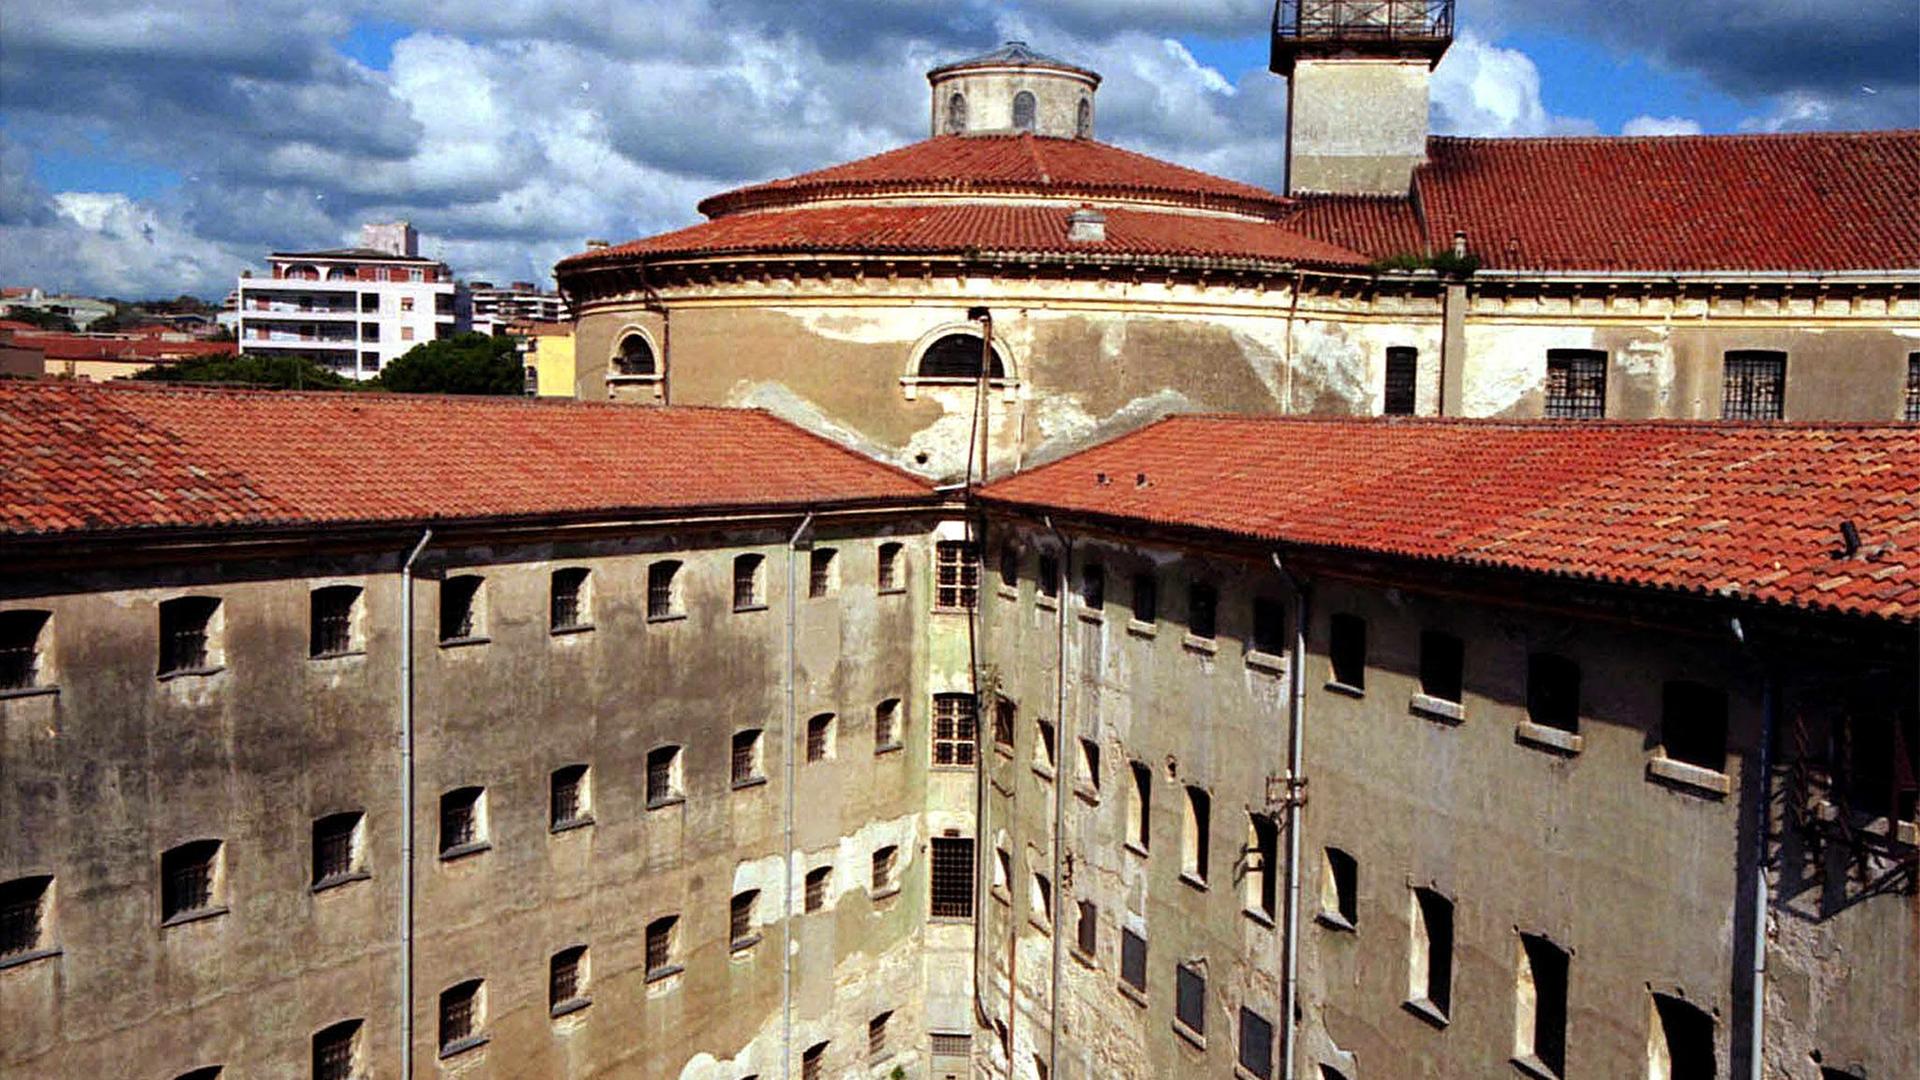 Ein Gefängniskomplex in Italien. Es ist ein verwinkeltes braunes Gebäude.